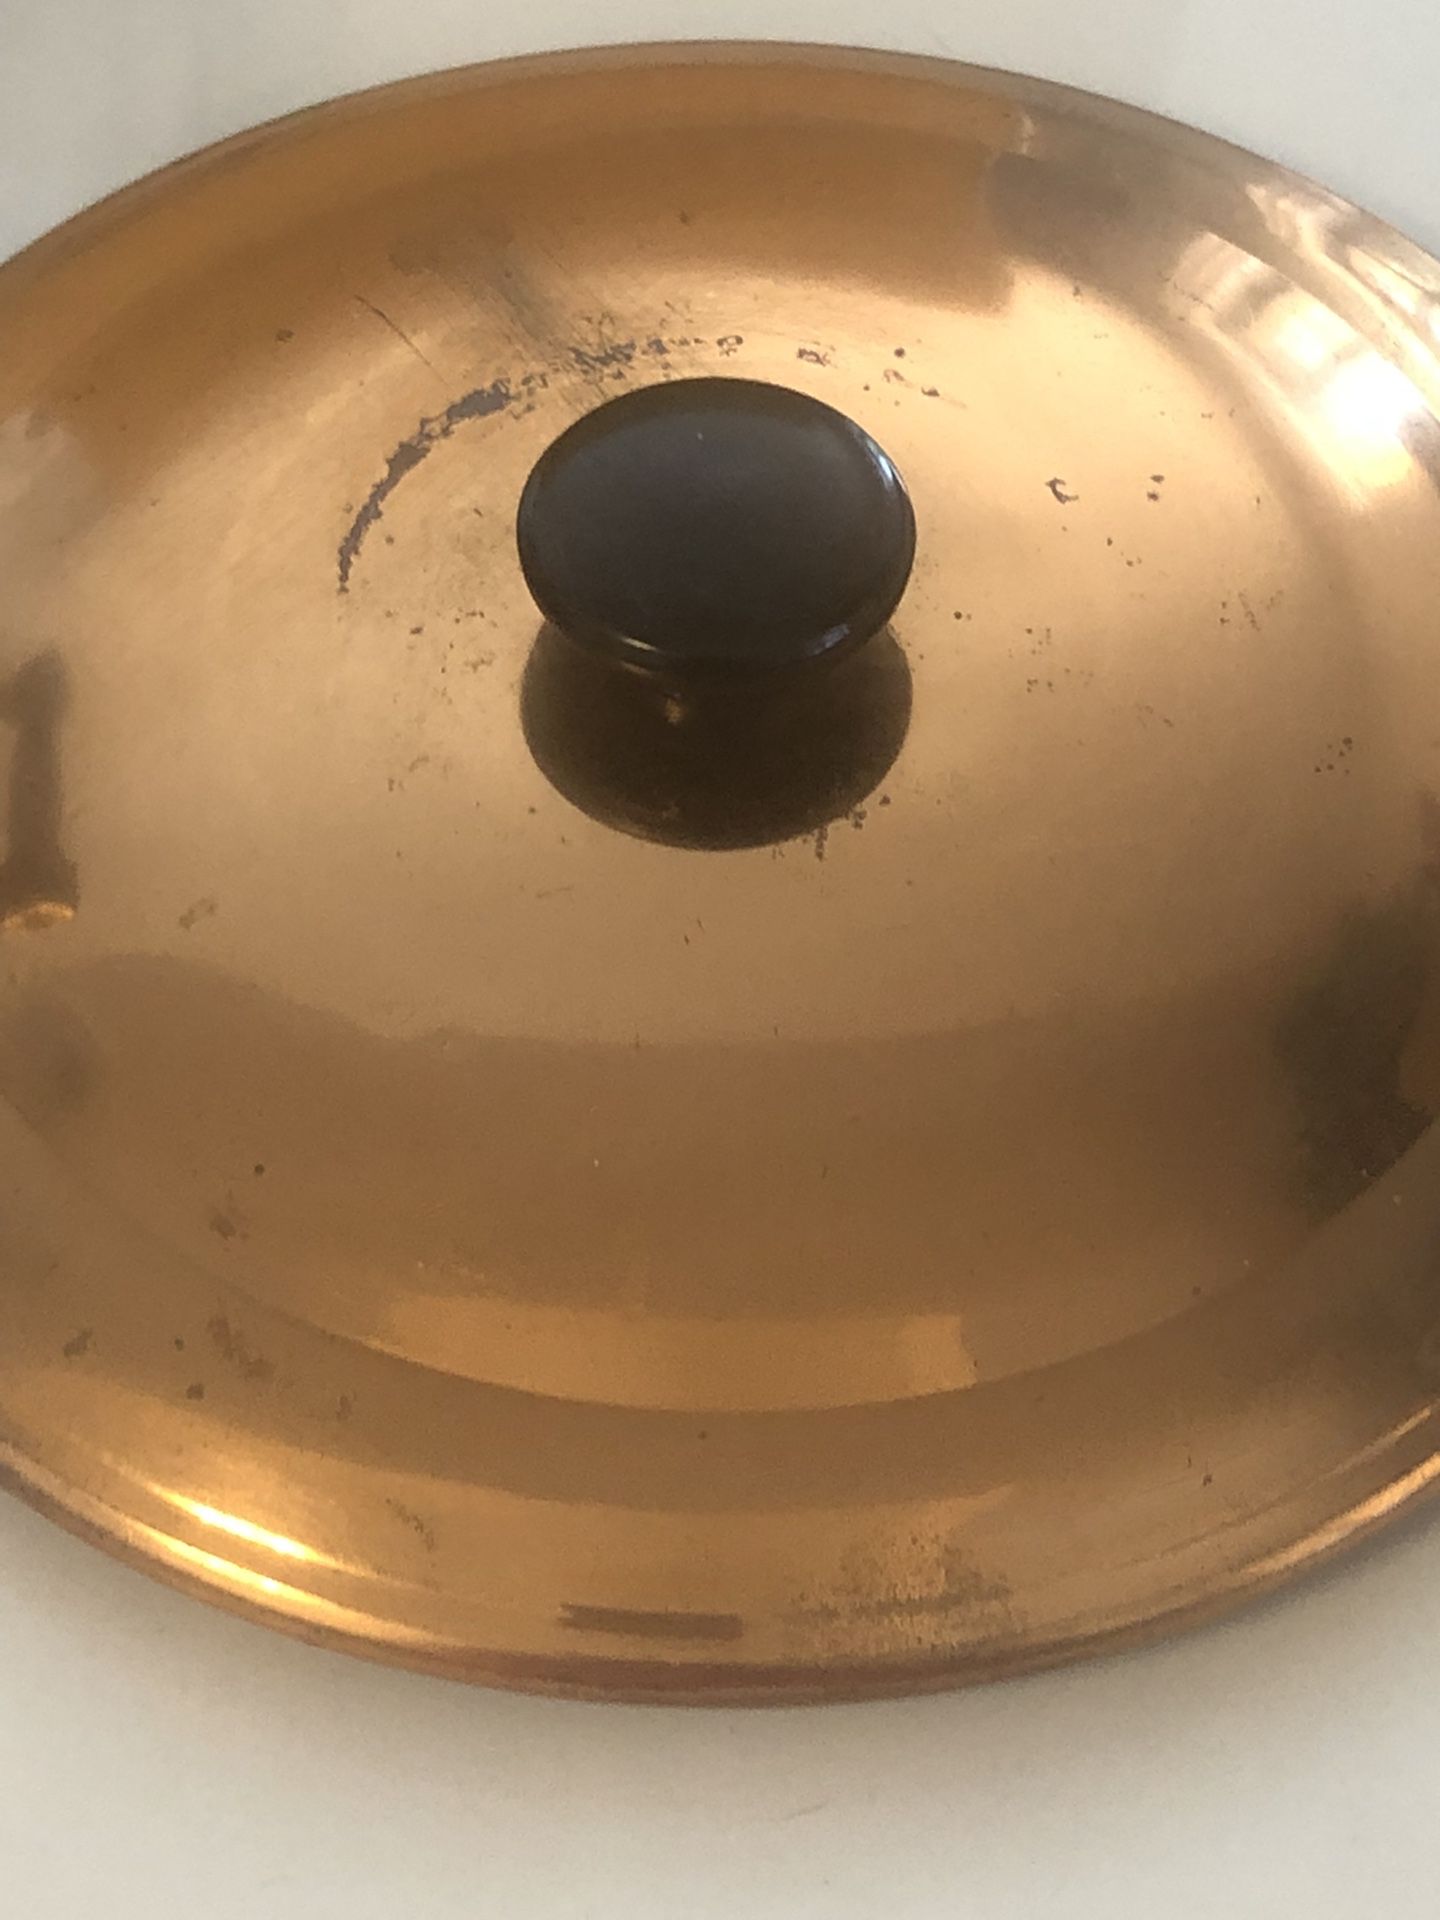 Vintage PYREX COPPER & CLEAR GLASS Casserole Serving Bowl with lid set 1.5 Qt 